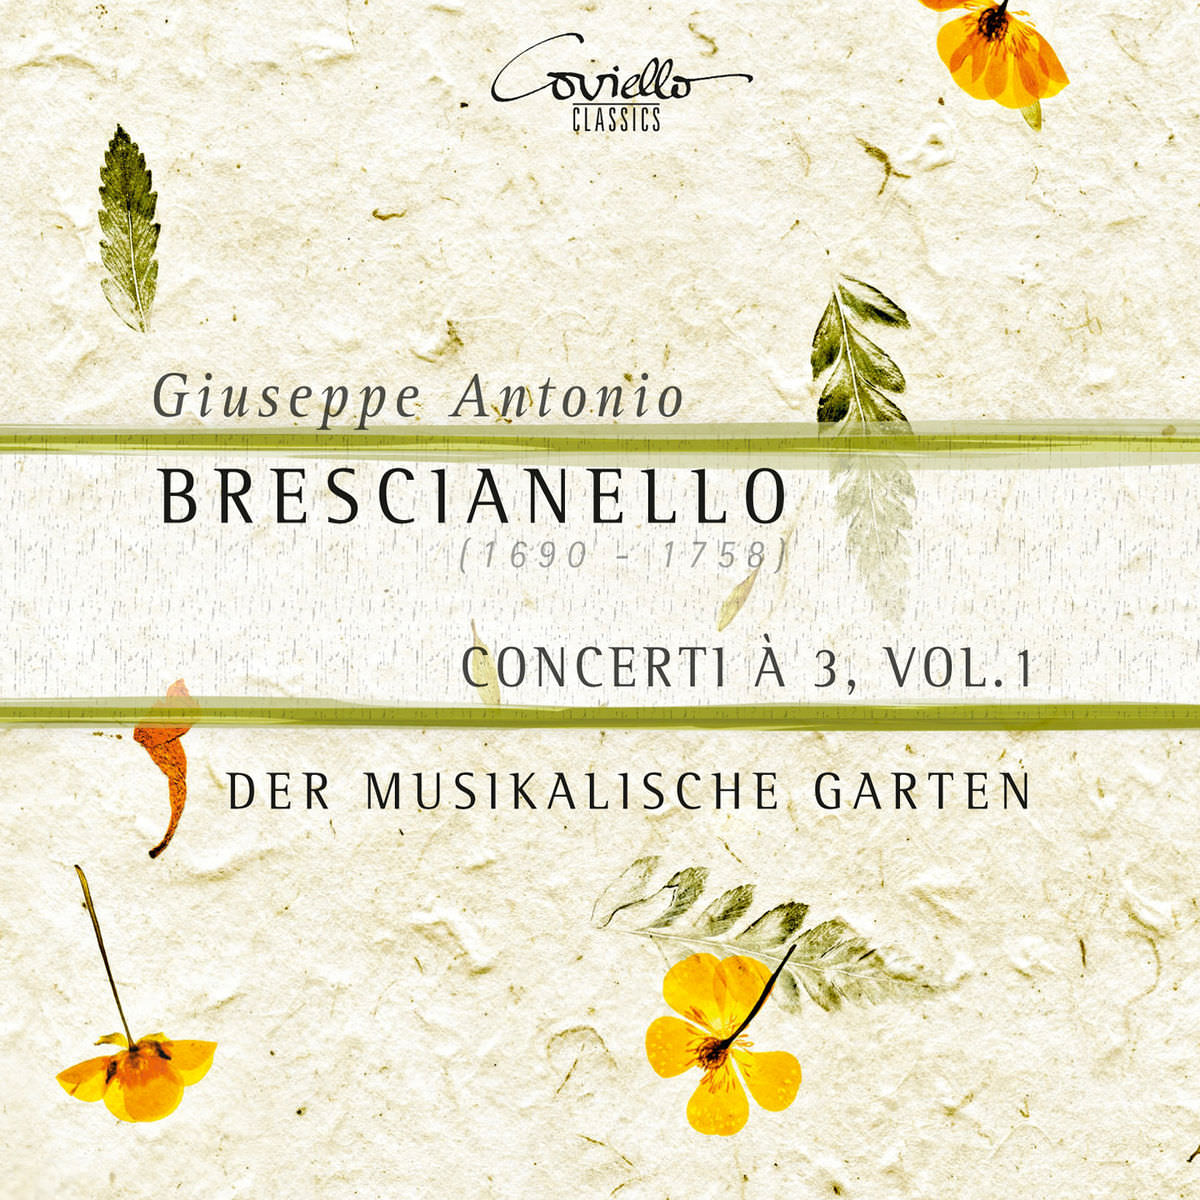 Der Musikalische Garten - Brescianello: Concerti a 3, Vol. 1 (2017) [Qobuz FLAC 24bit/96kHz]